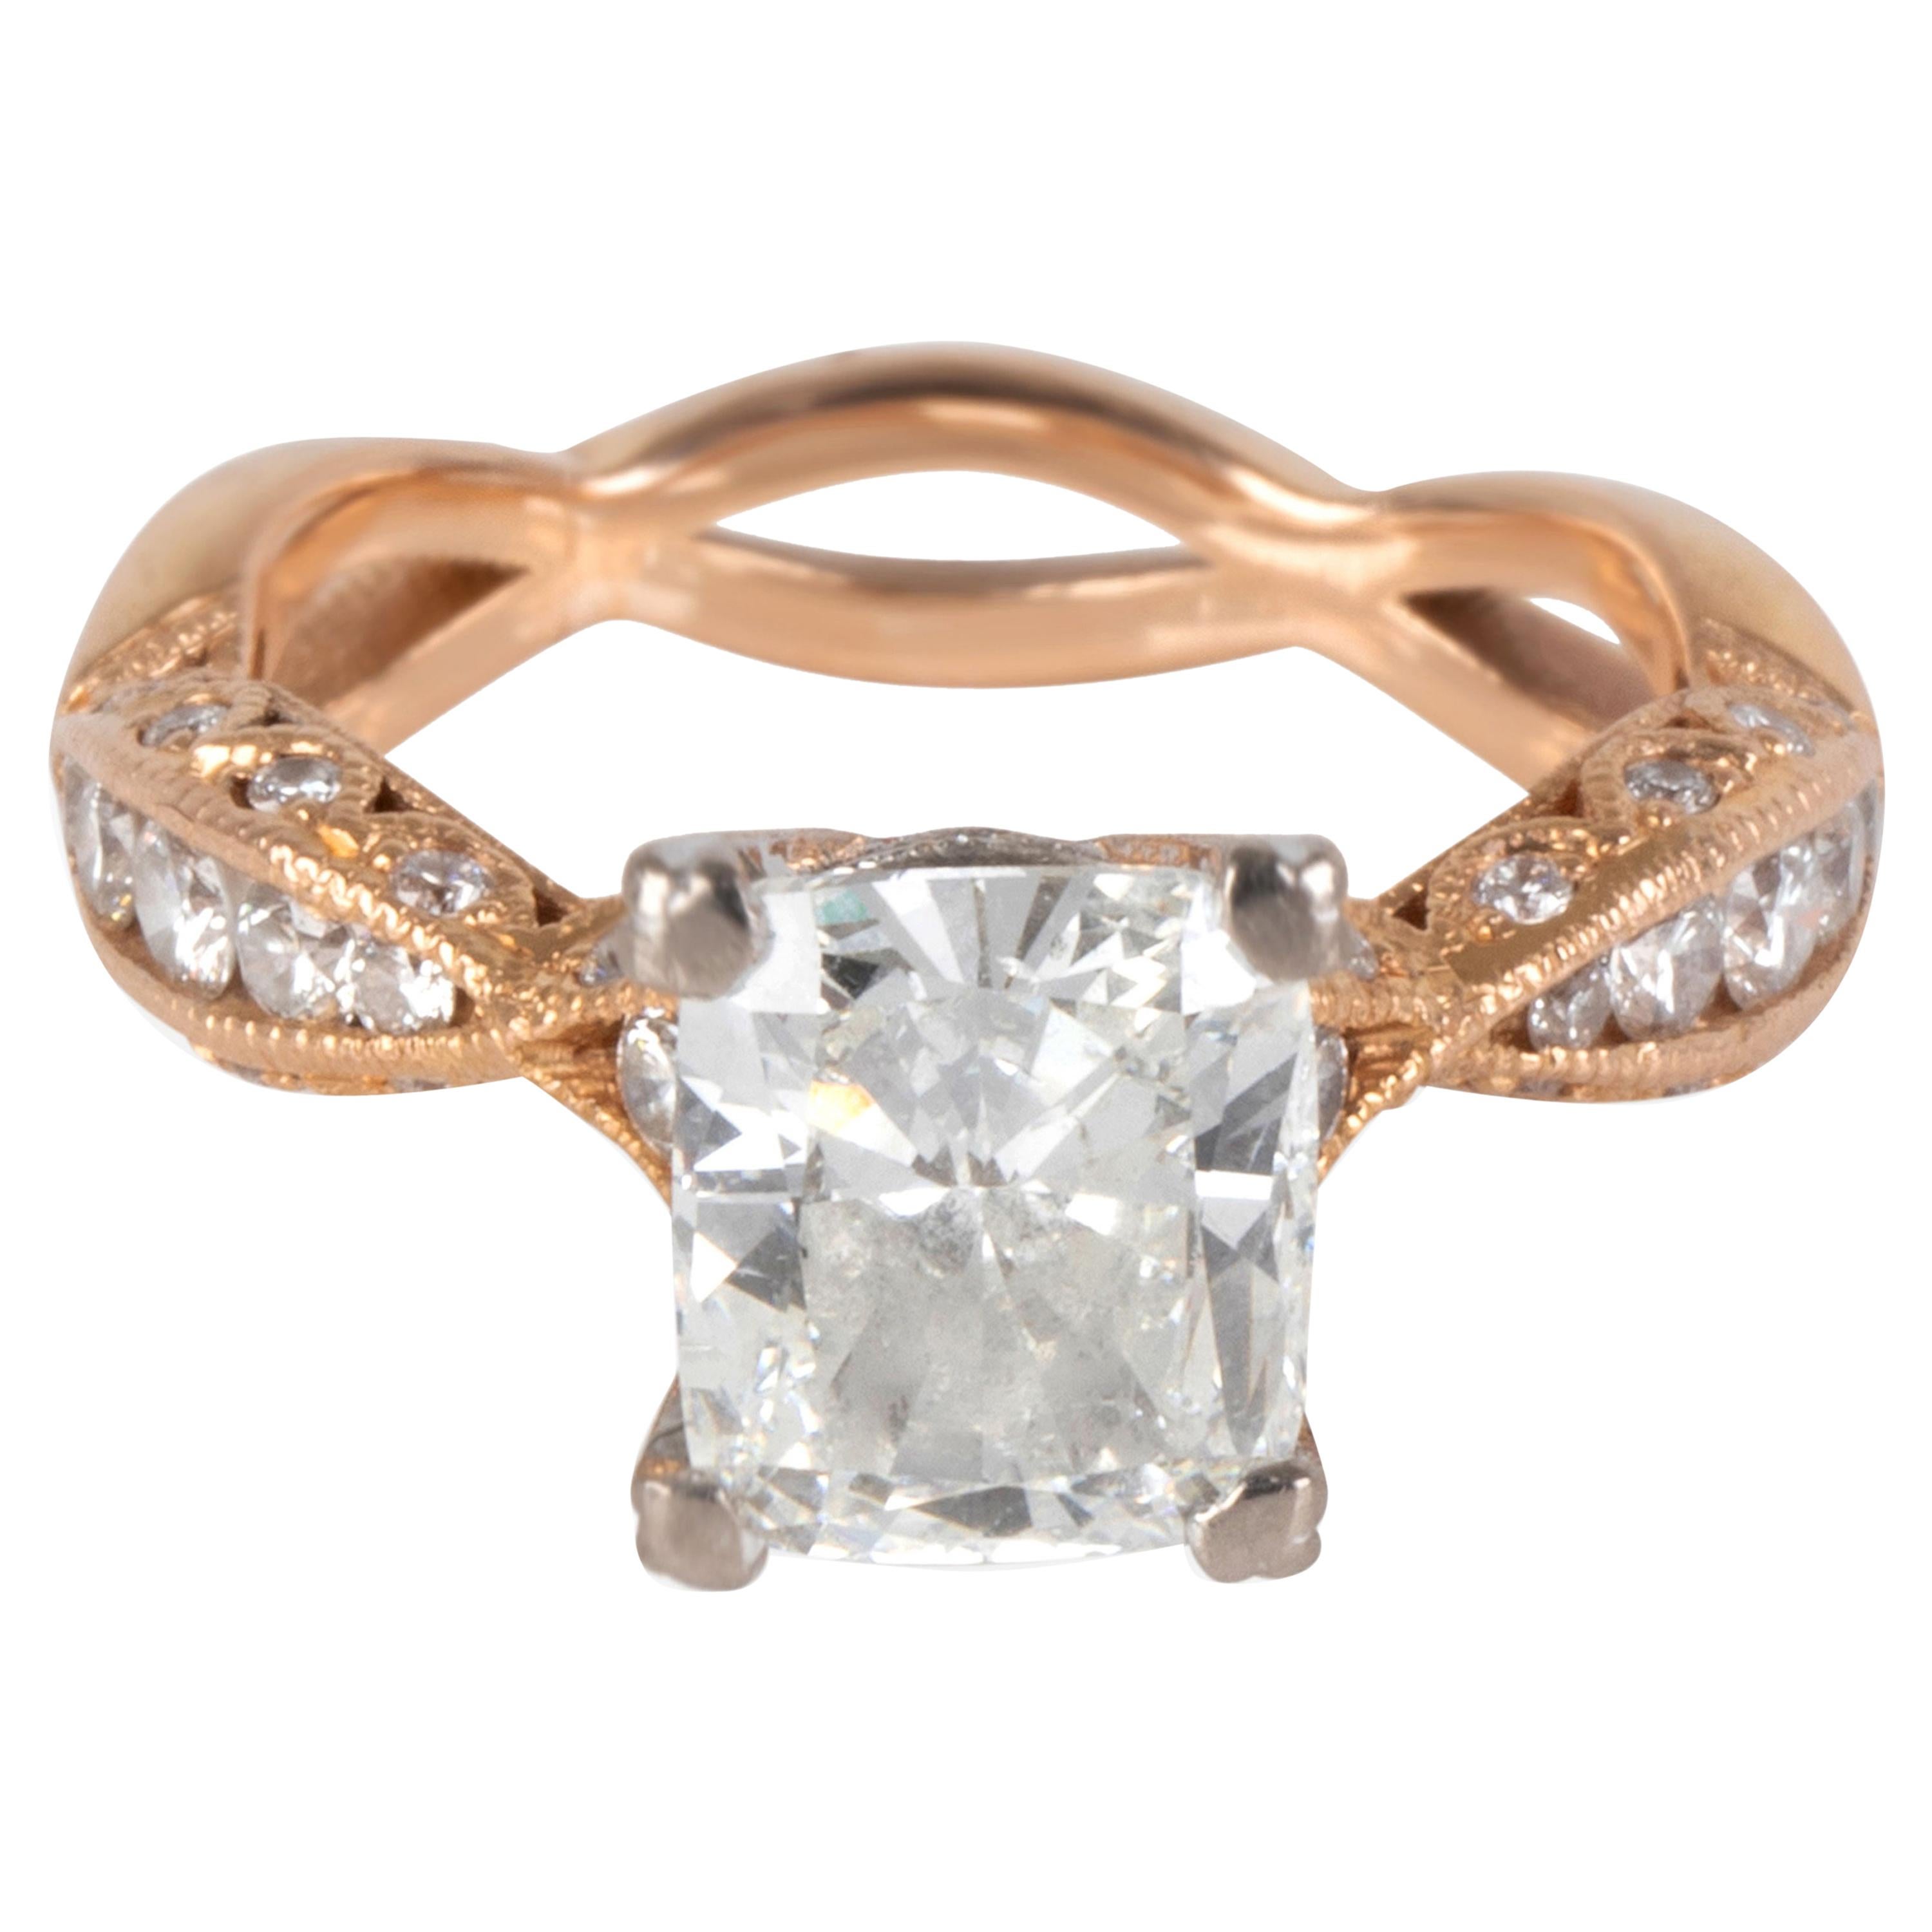 Tacori Diamond Ring in 18 Karat Rose Gold GIA Certified G SI2 2.37 Carat